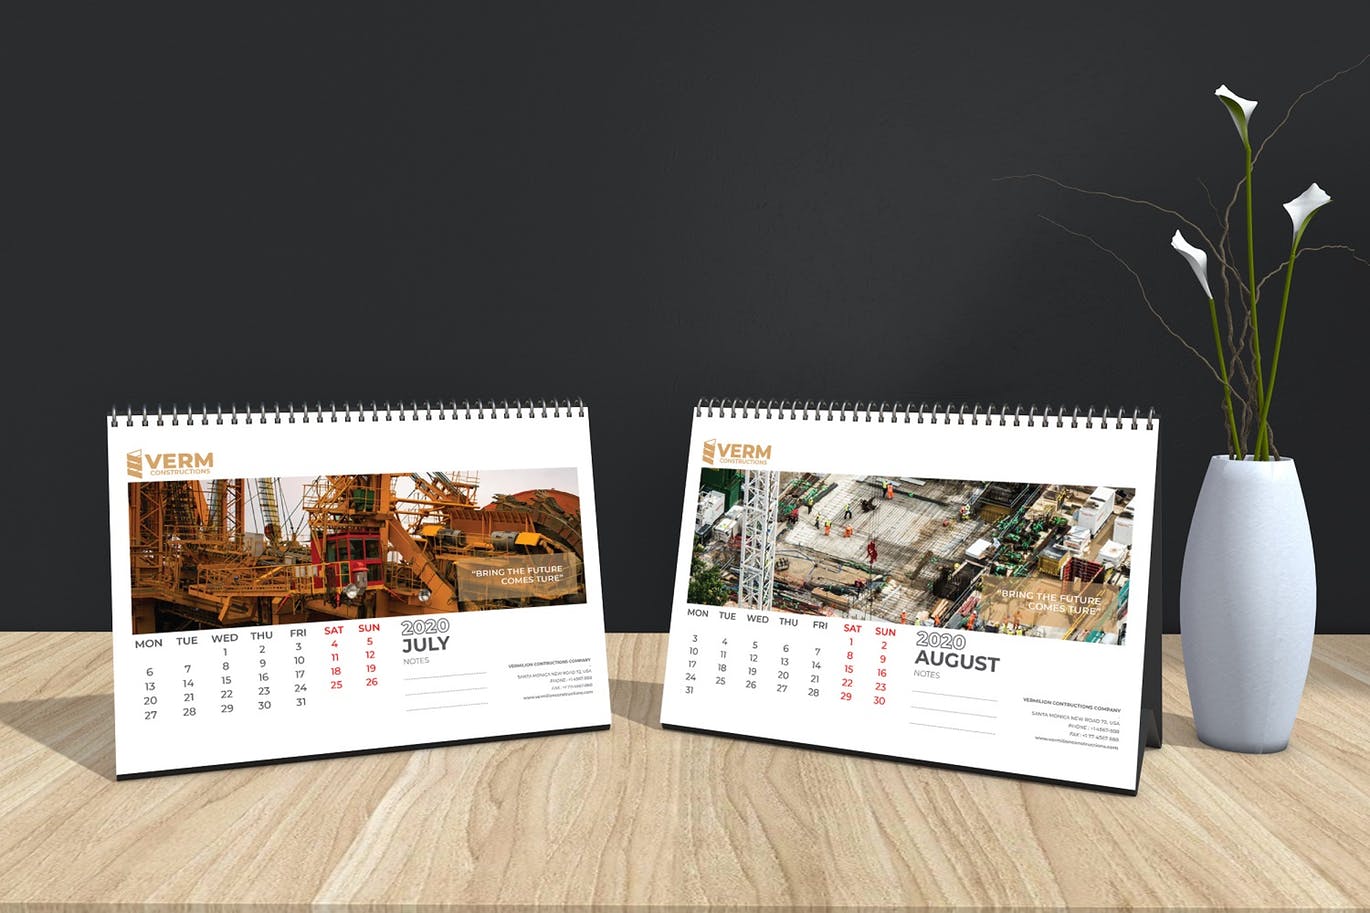 2020年建筑主题台历&挂墙日历表设计模板 Construction Wall & Table Calendar 2020插图12